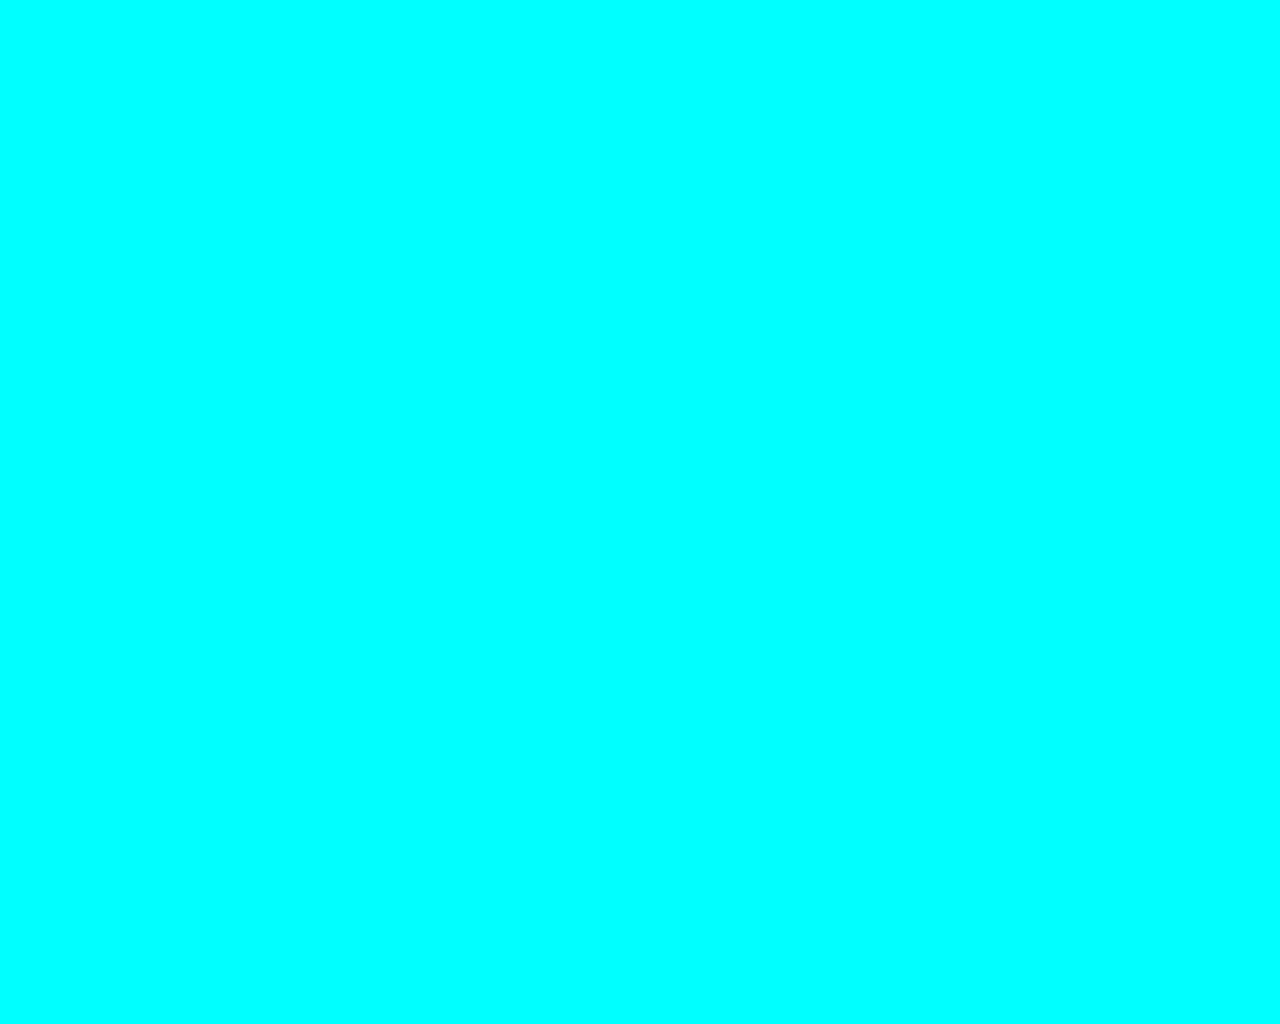 A blue background with no text - Aqua